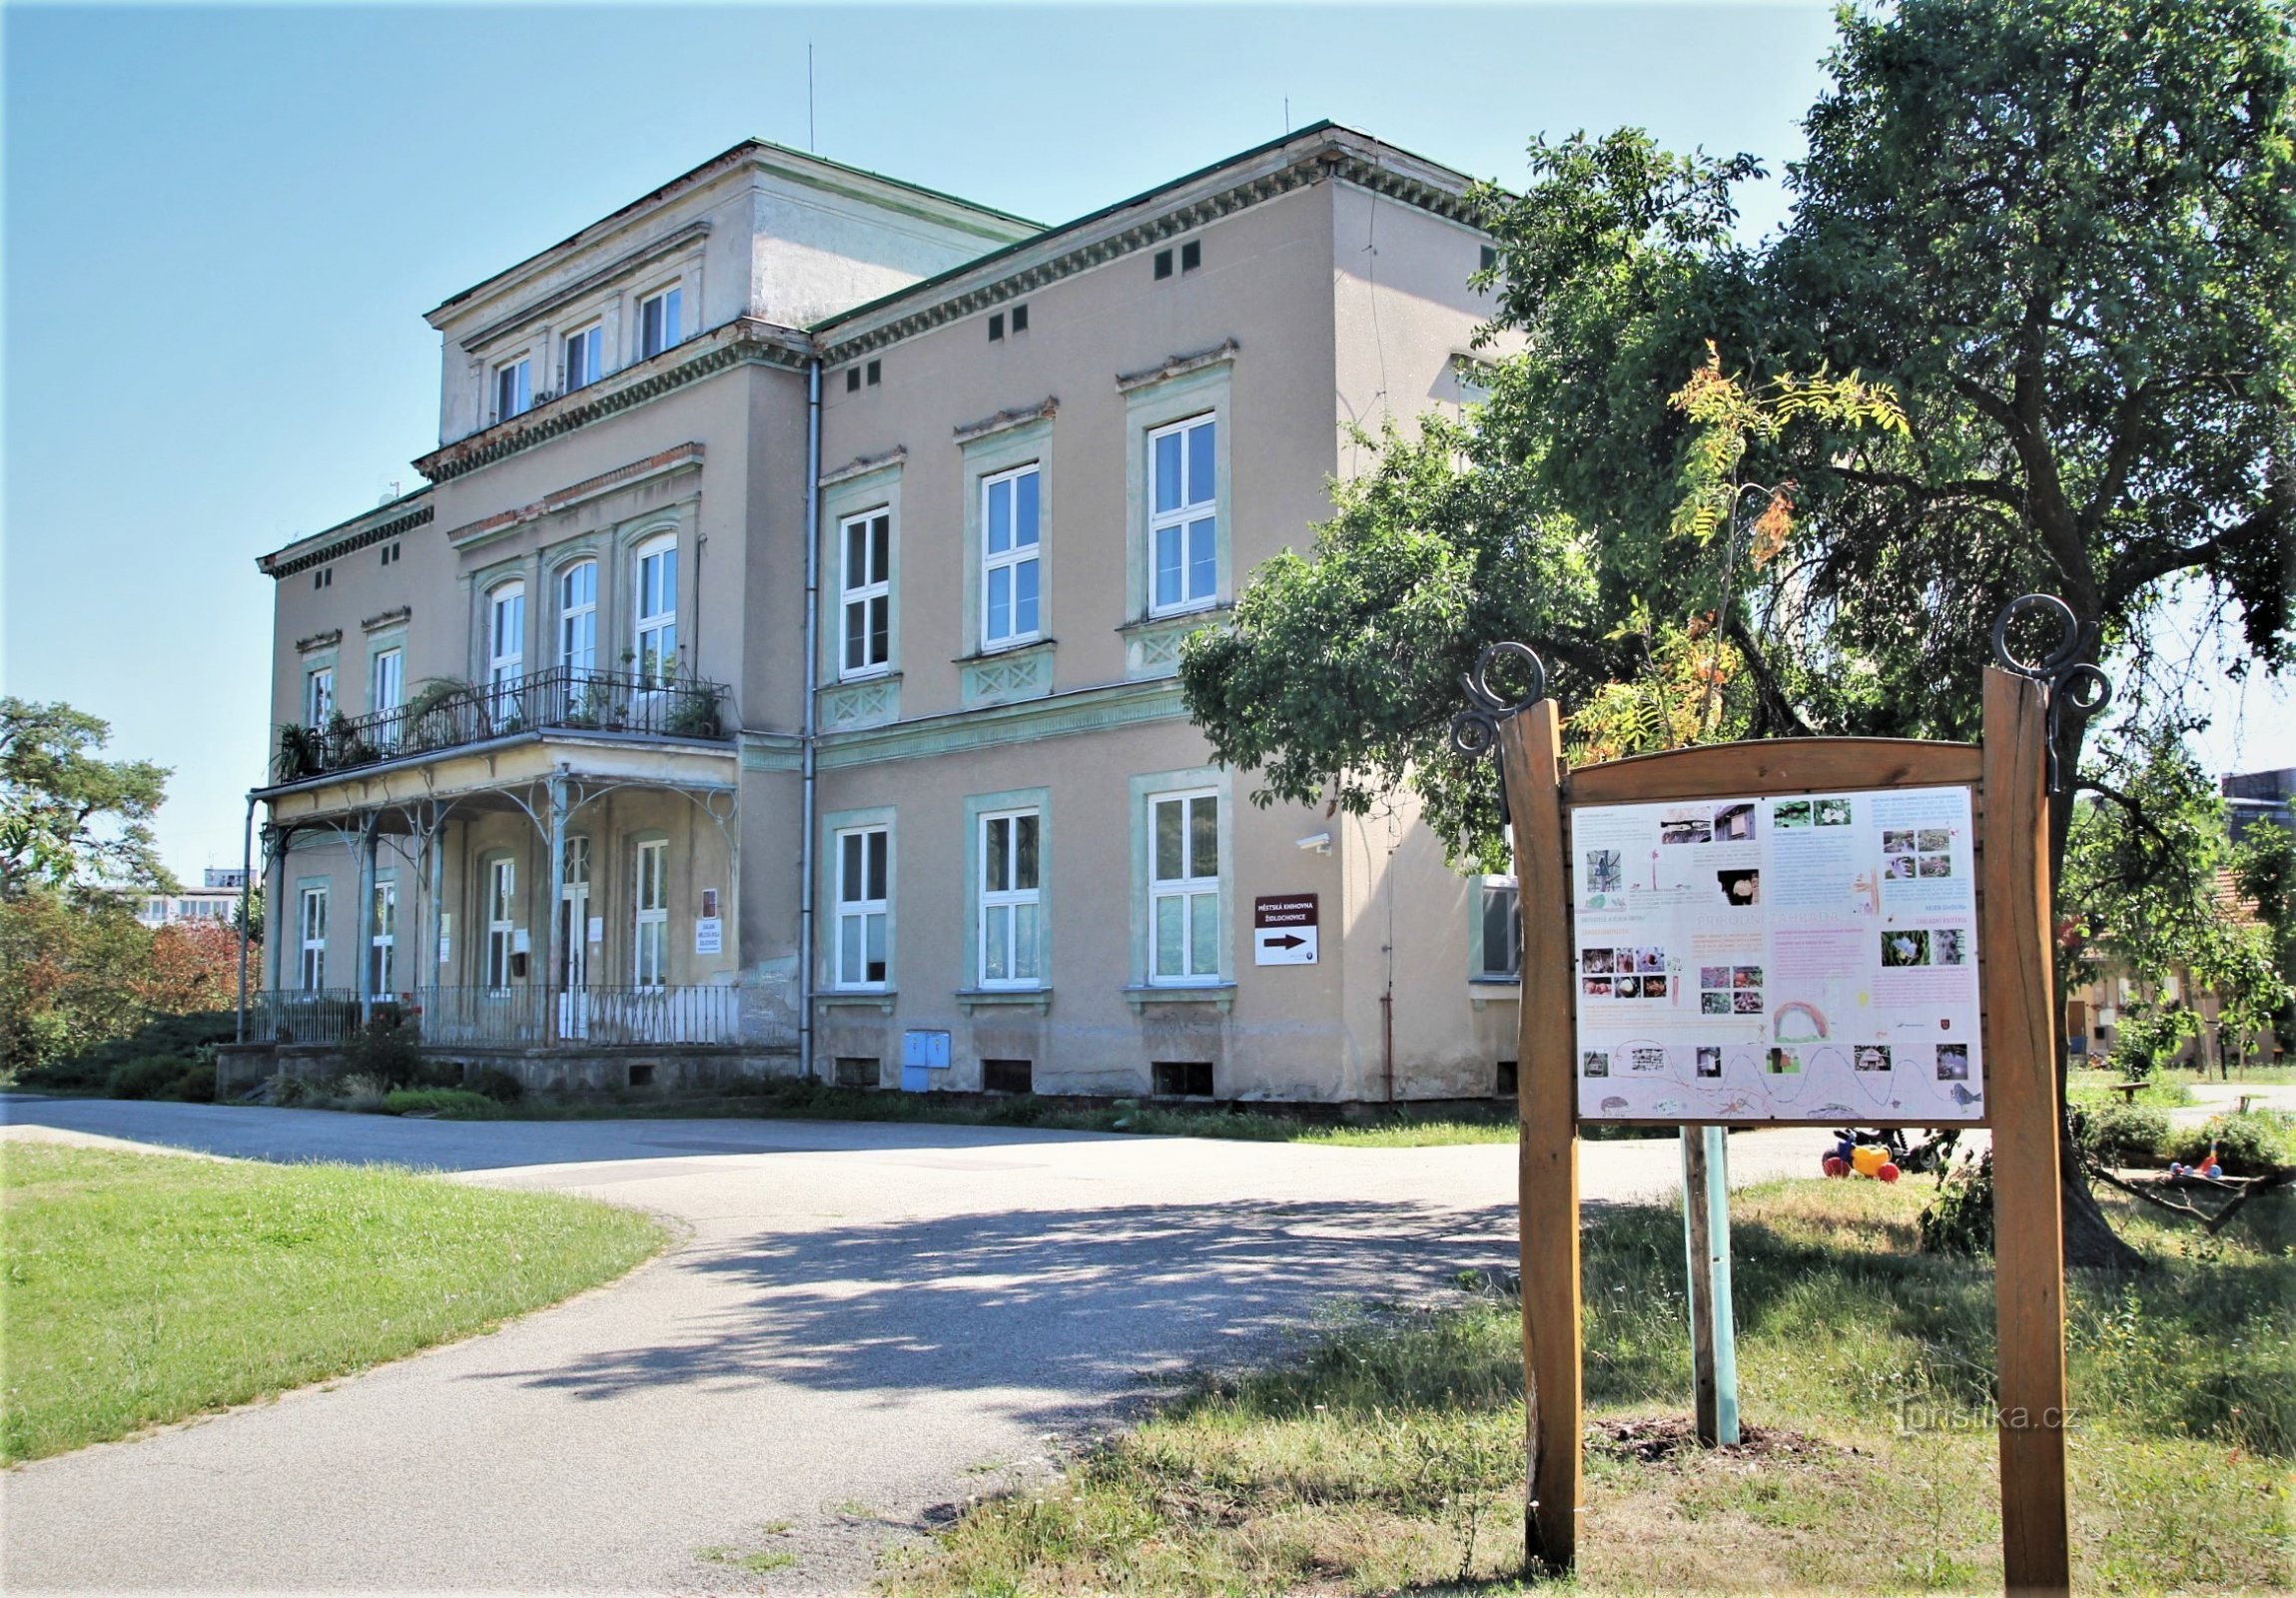 Židlochovice - Gebied van de villa van Robert